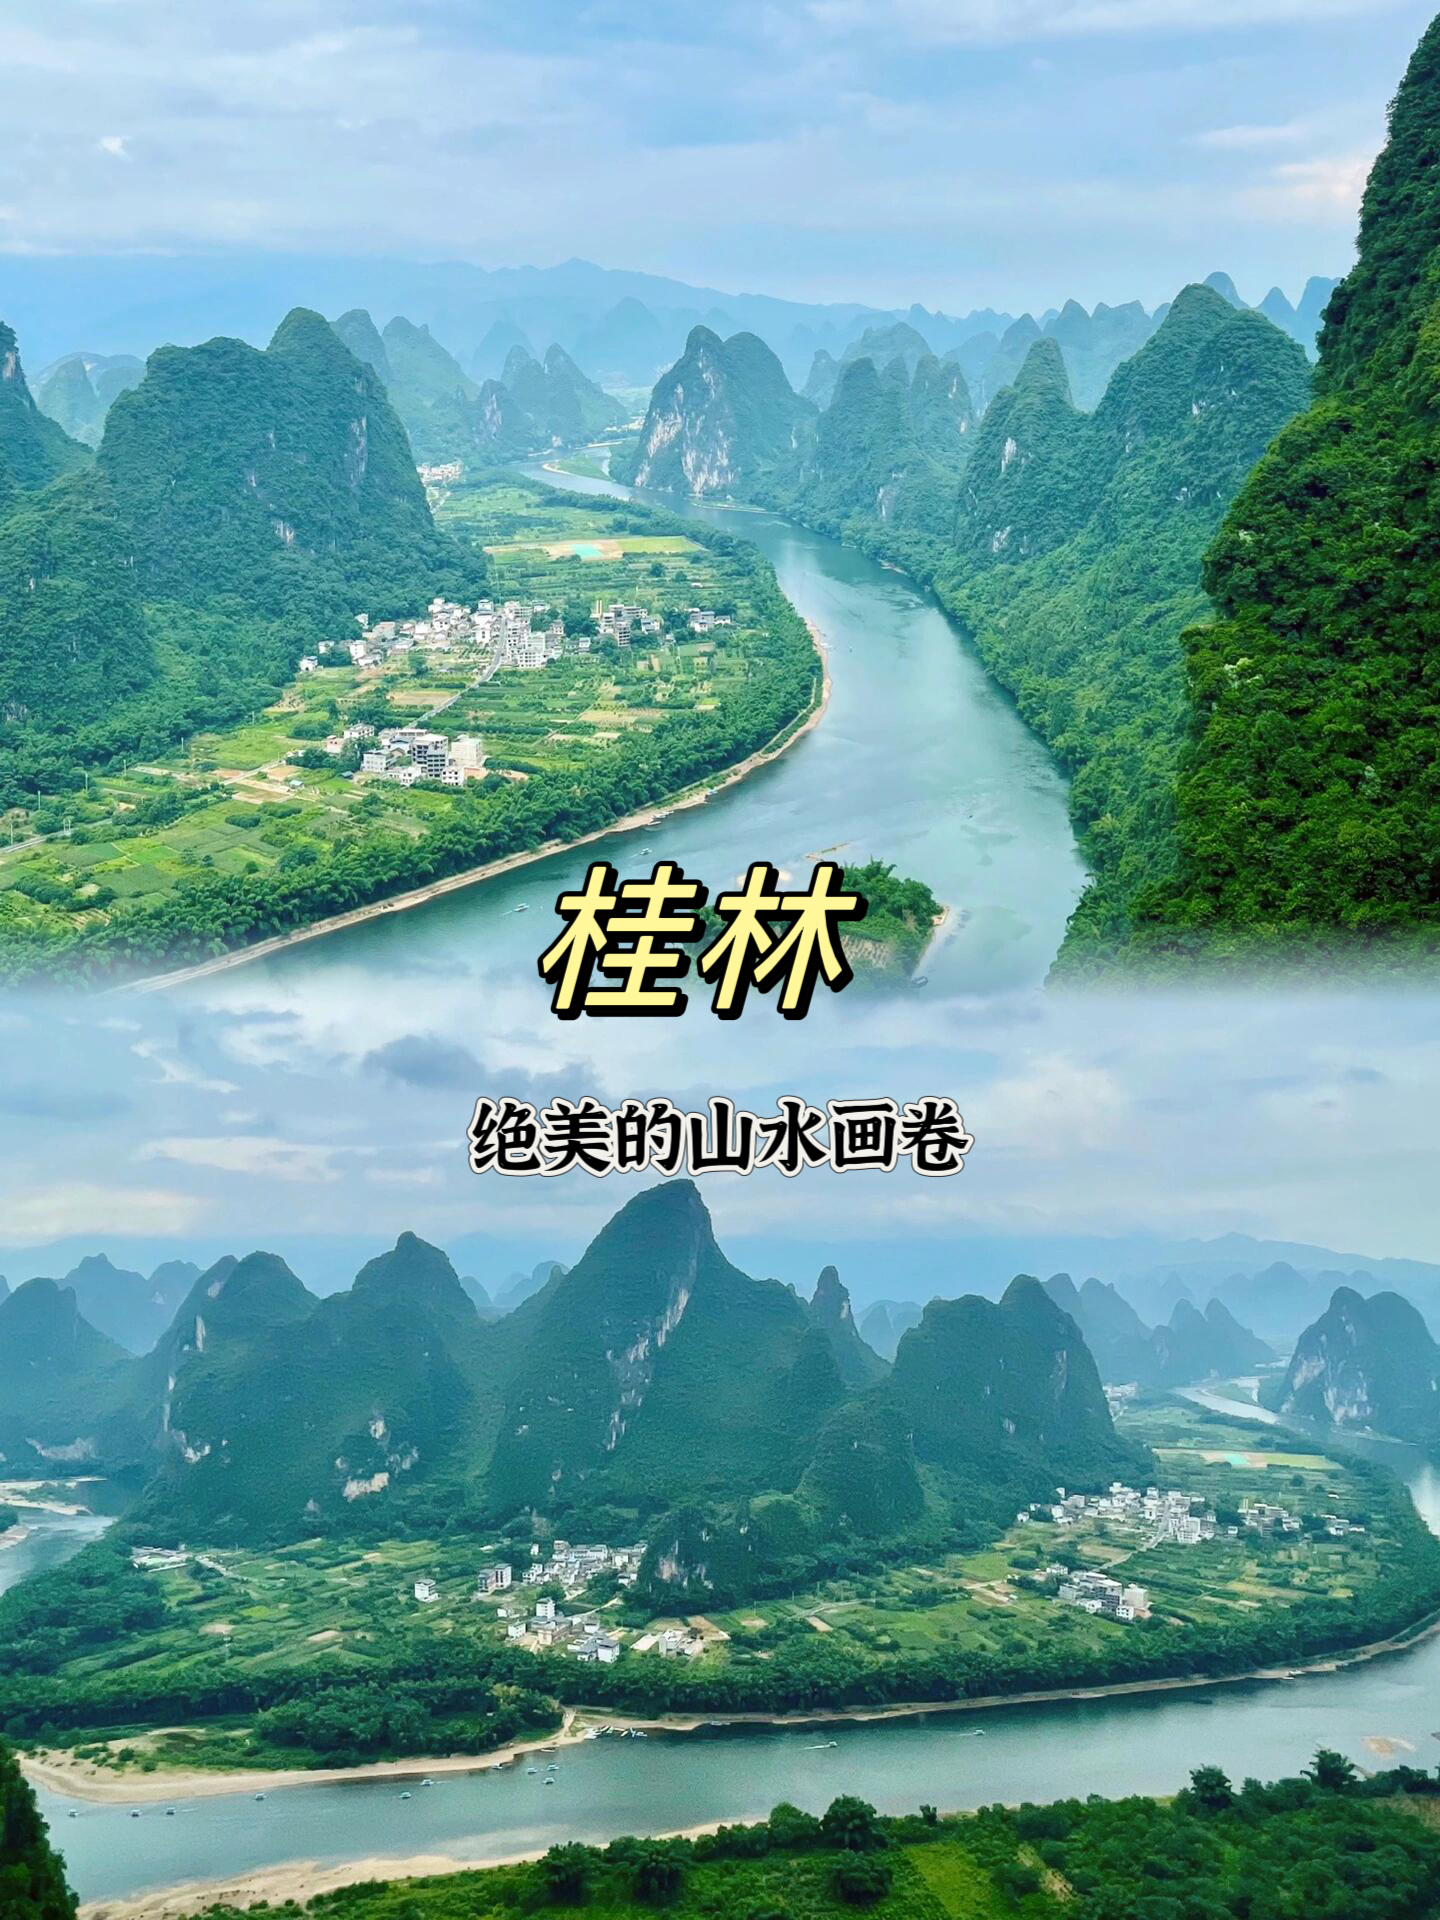 桂林 | 绝美的山水画卷